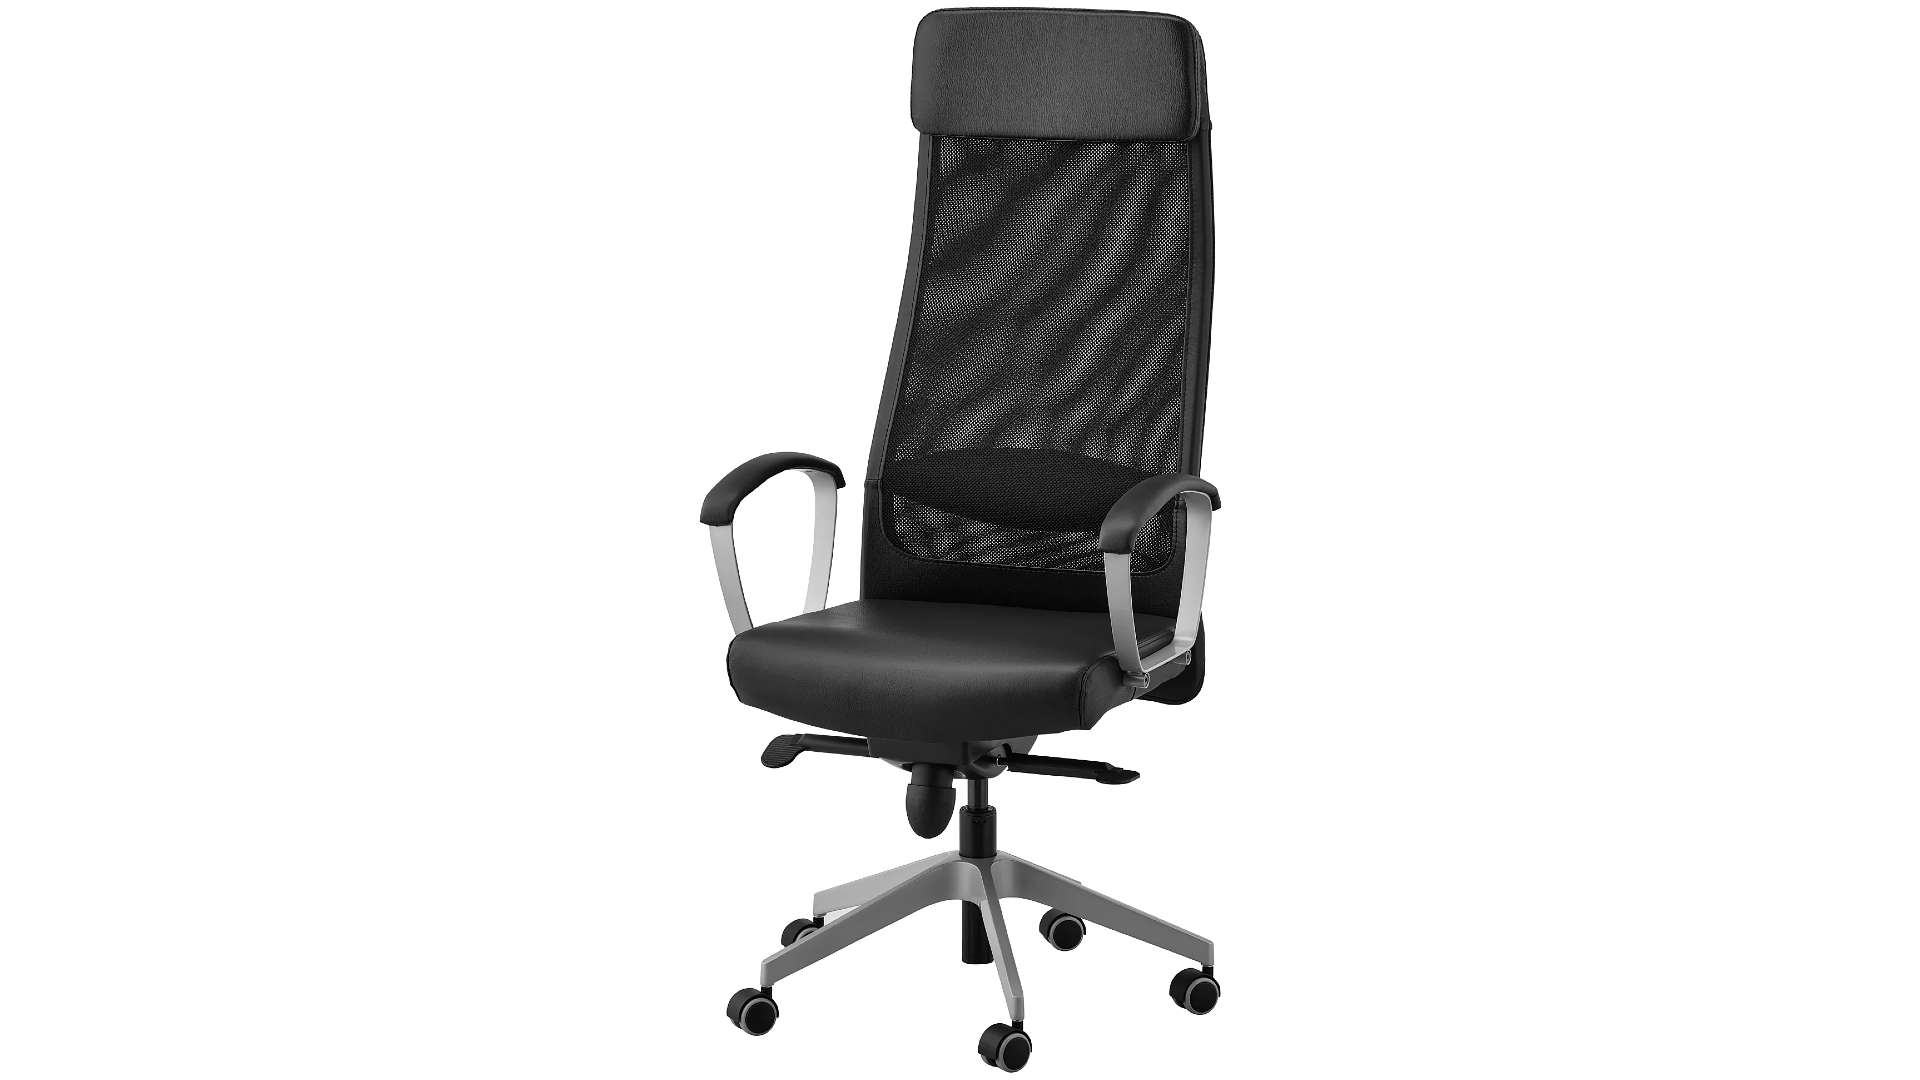 Лучшее дешевое офисное кресло для игр — Ikea Markus.